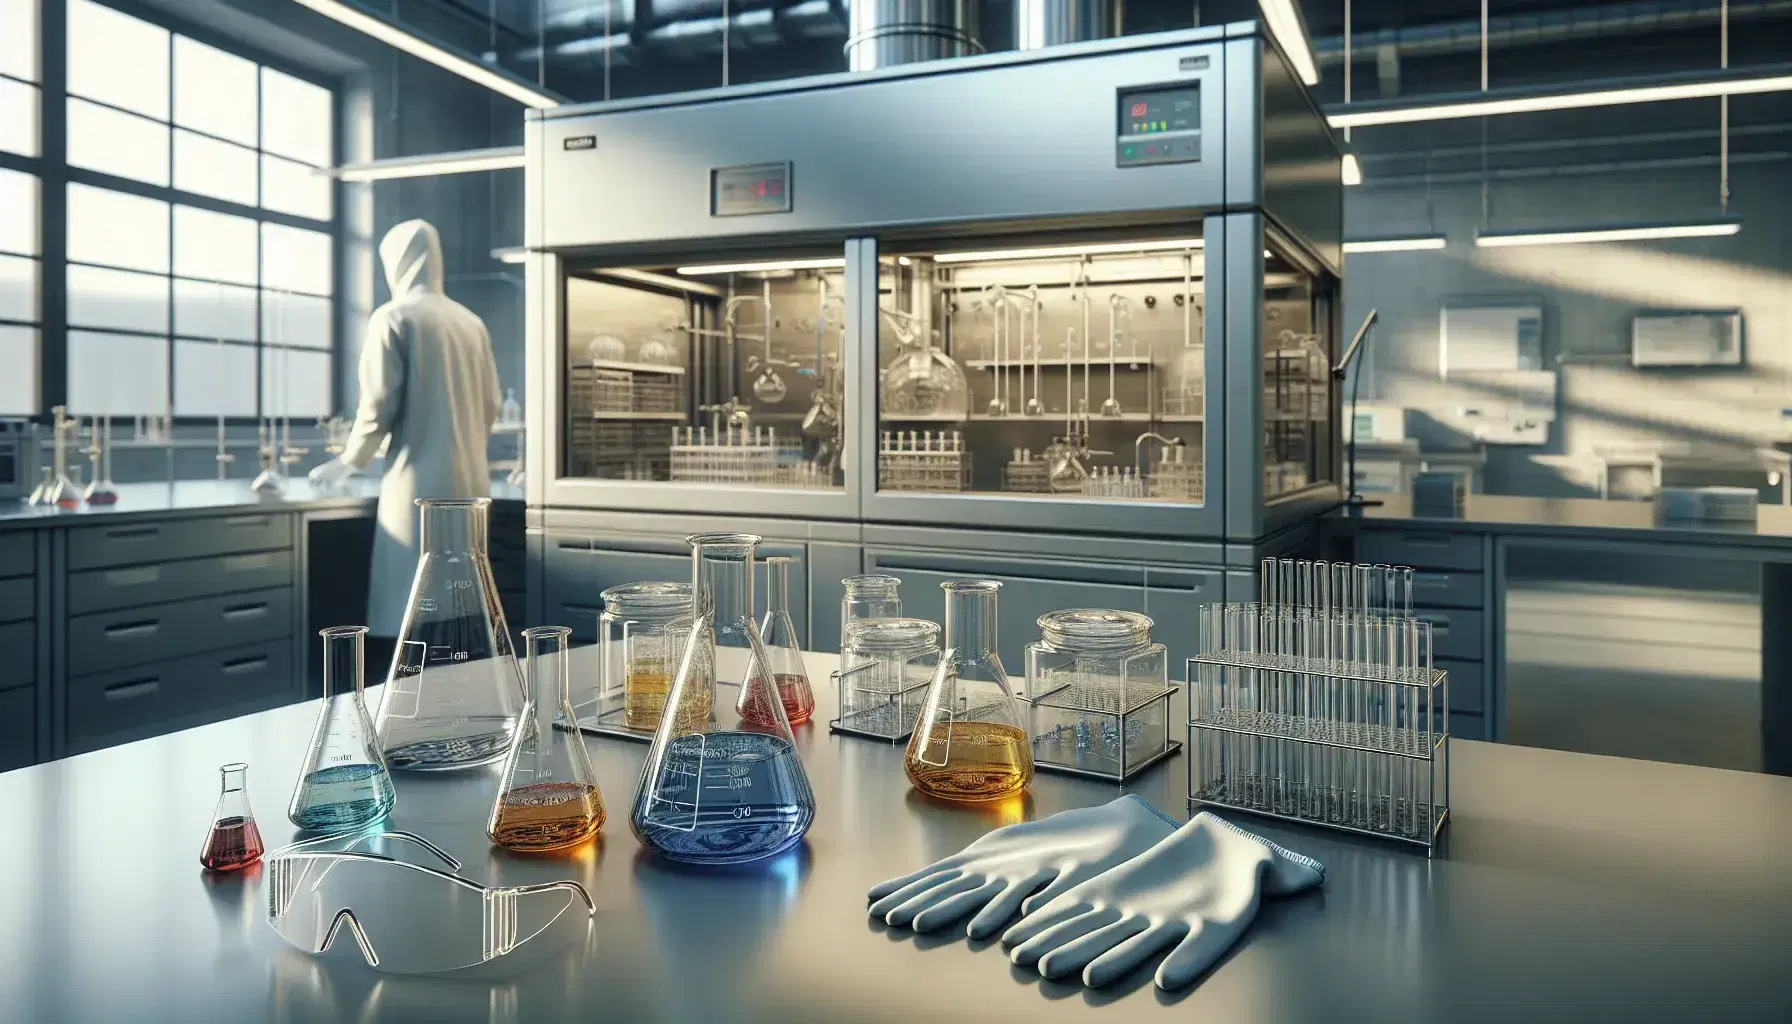 Laboratorio de investigación industrial con mesa de trabajo, frascos de vidrio con líquidos de colores, guantes de seguridad, gafas protectoras y técnico en bata blanca.